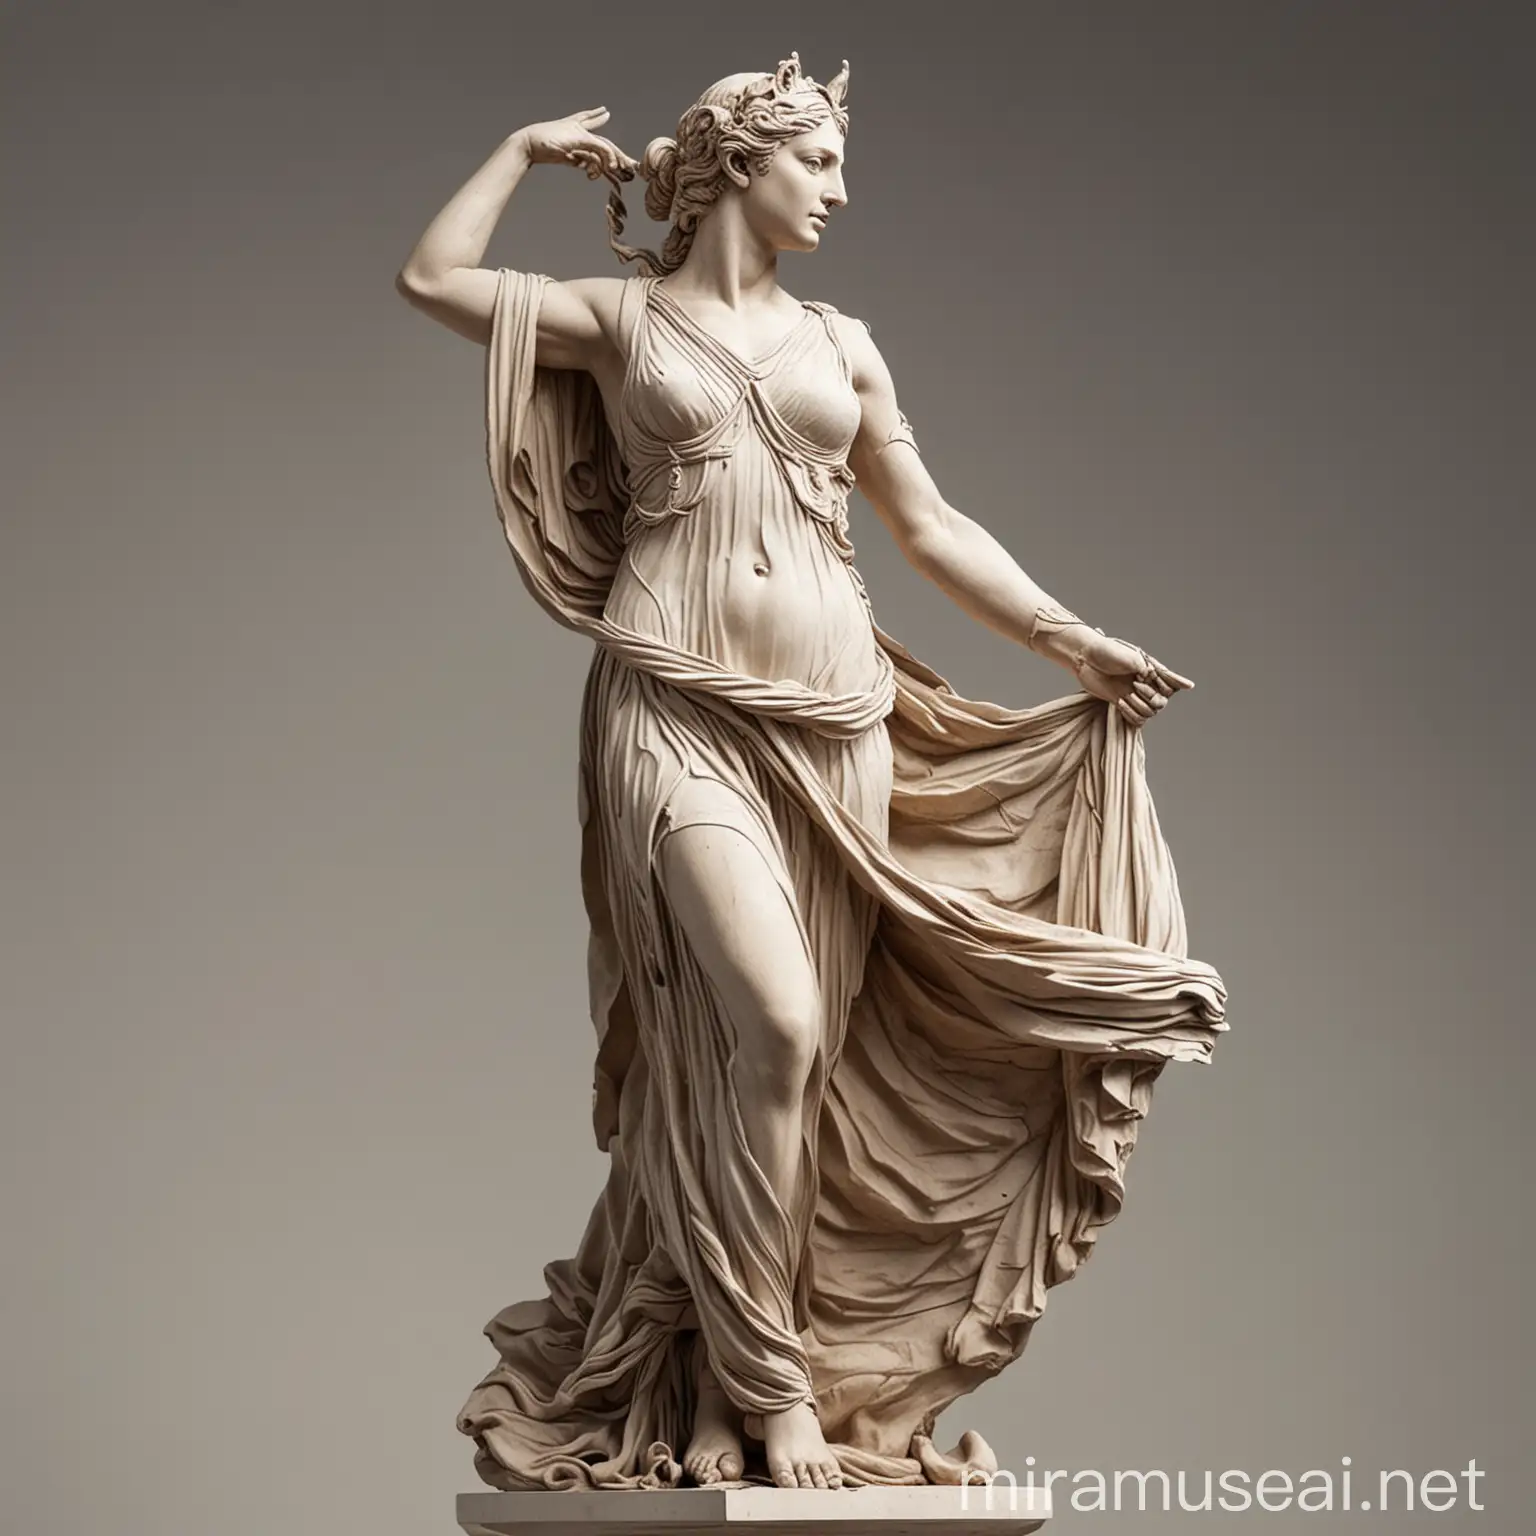 Diosa griega tipo escultura haciendo una pose épica 